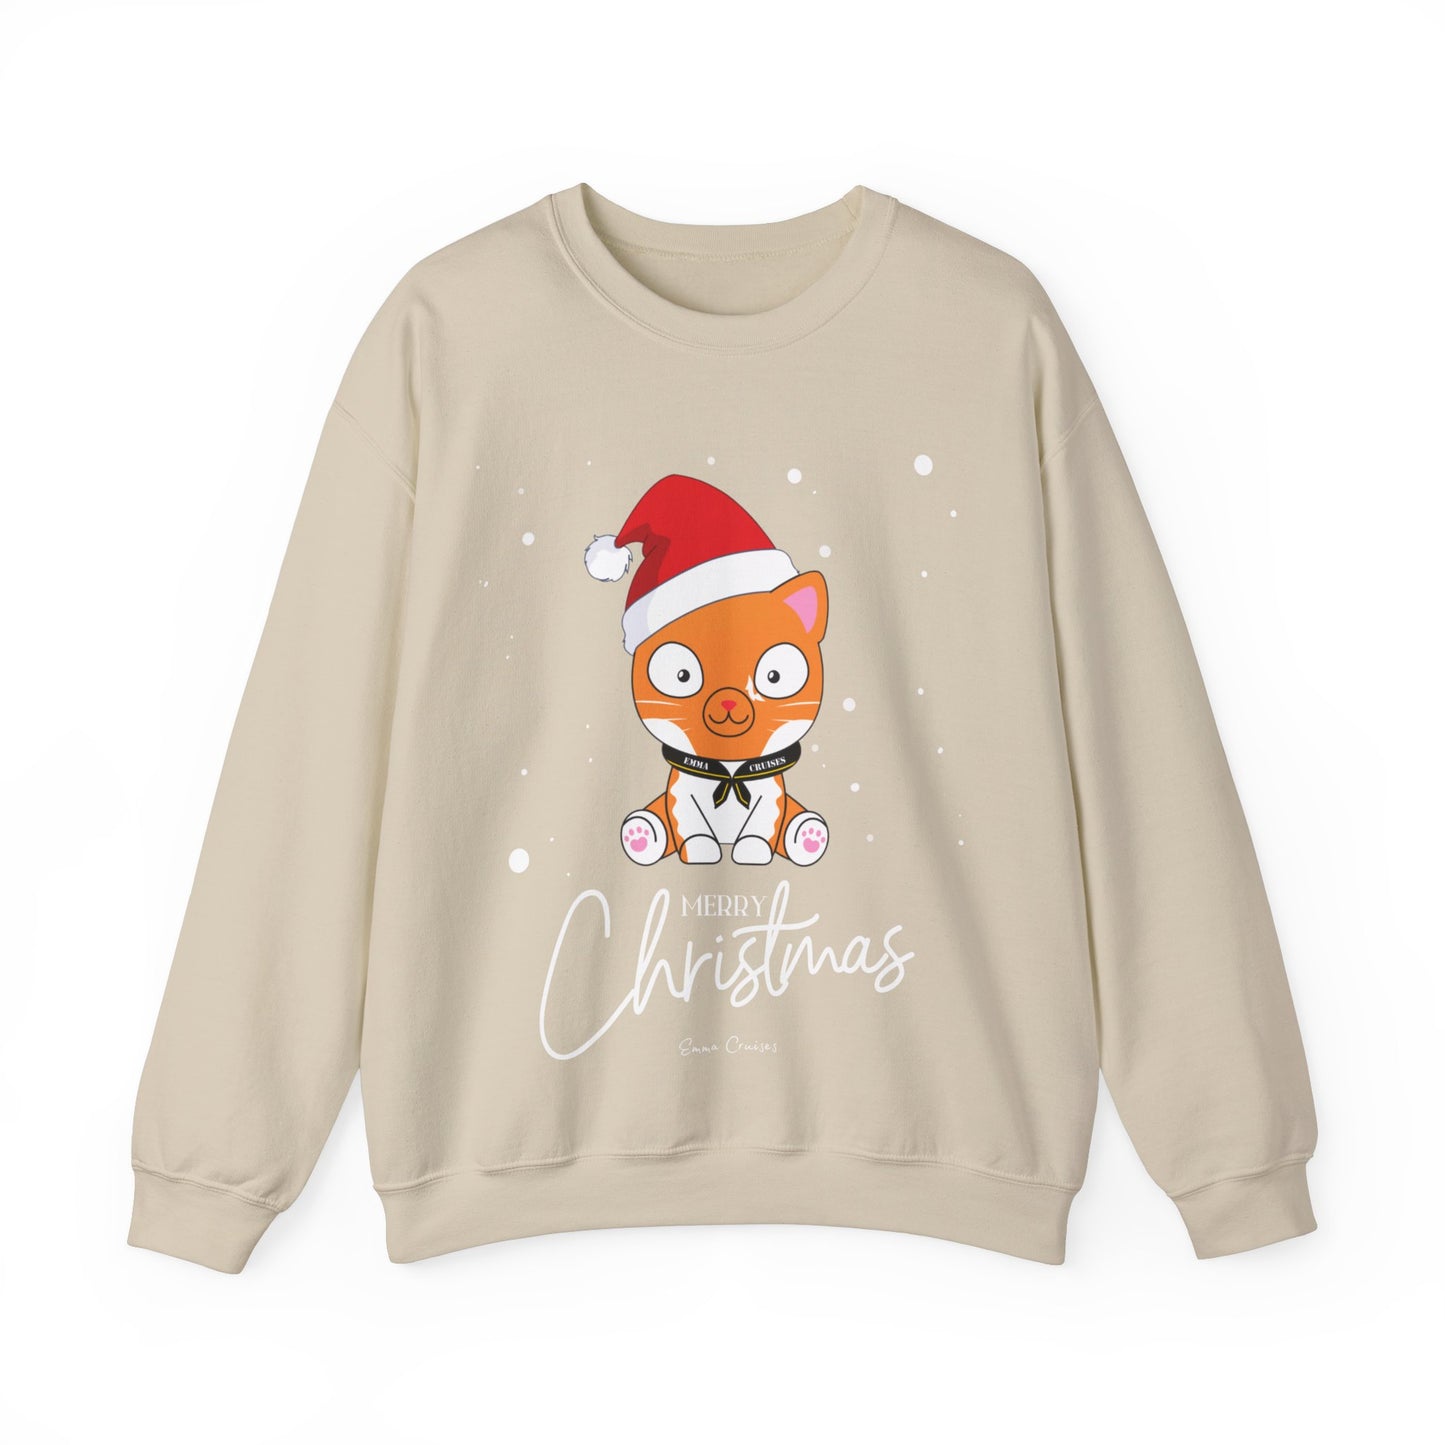 Frohe Weihnachten - UNISEX Crewneck Sweatshirt